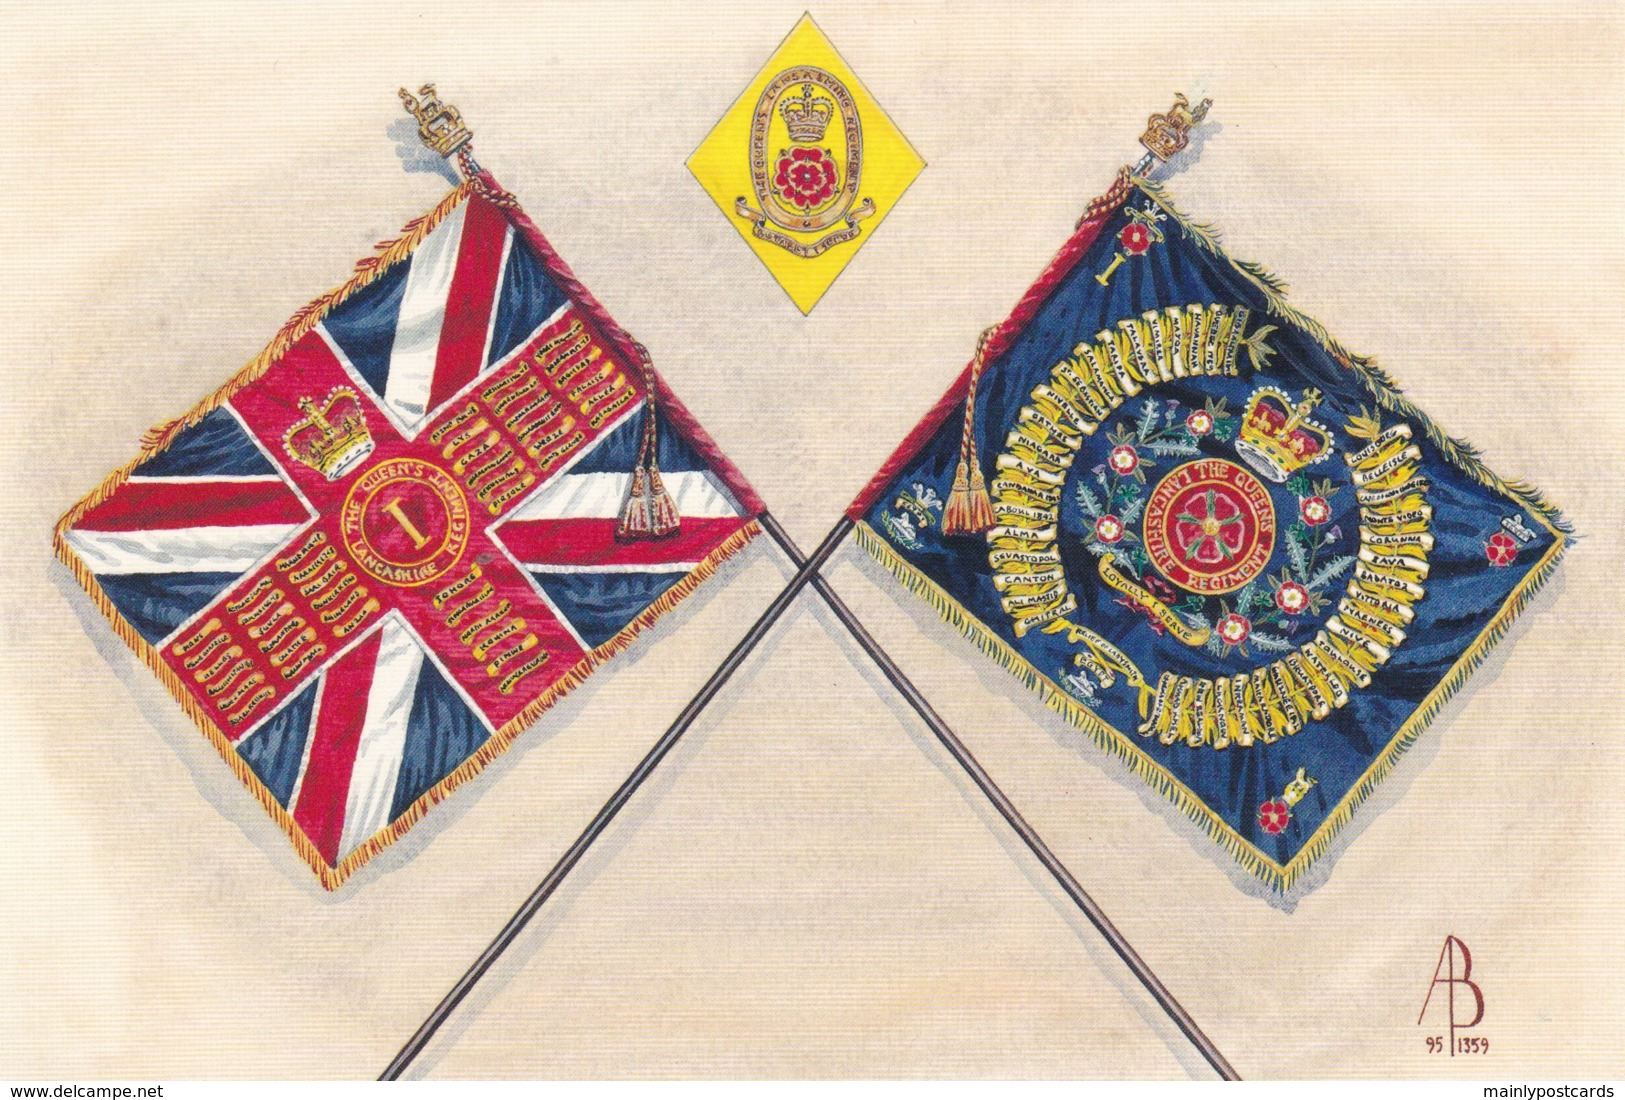 AS38 Military - Queen's Colour, Regimental Colour, Soldier's Cap Badge, 1st Bn The Queen's Lancashire Regiment - Regiments